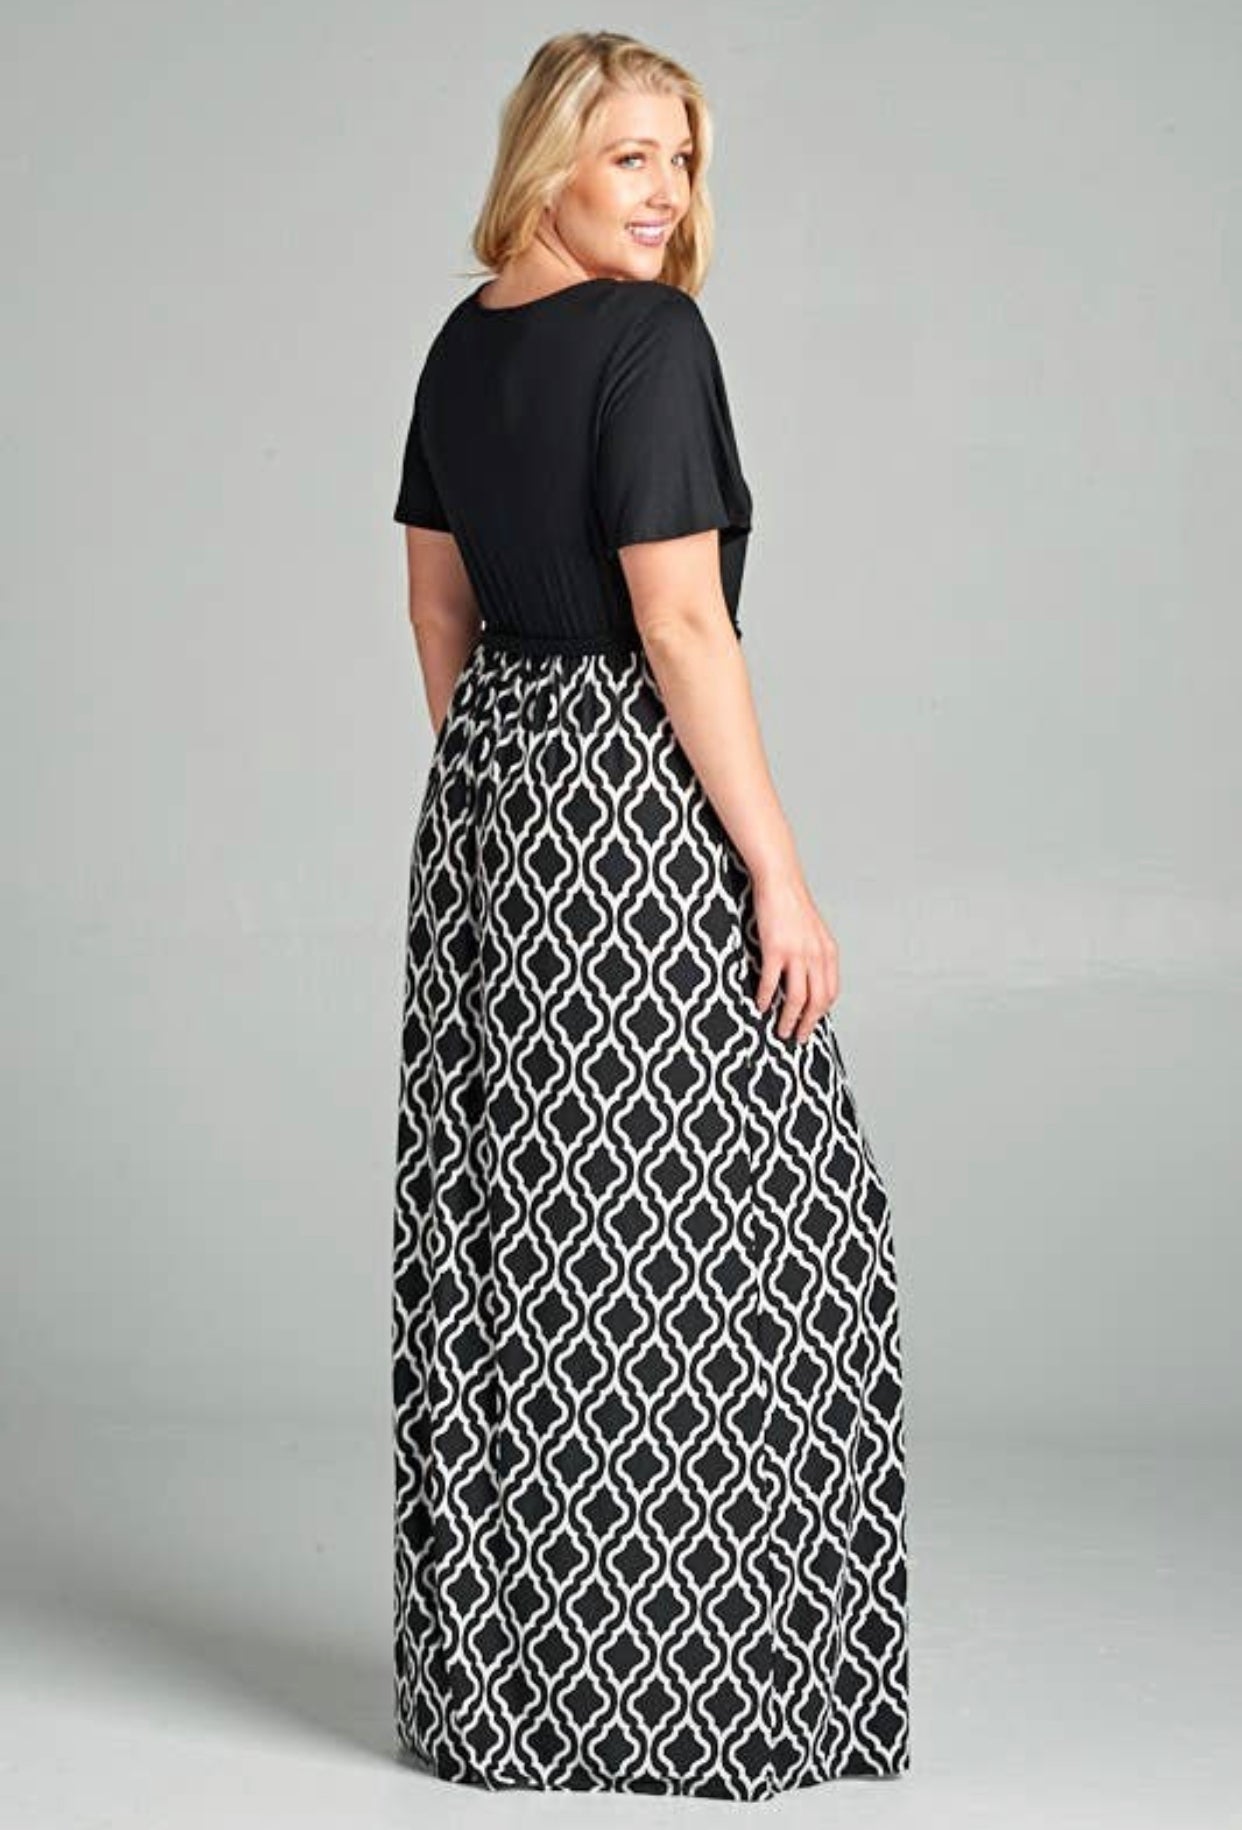 Plus Size Wrap Maxi Dress with Belt, Sizes 1XLarge - 3XLarge (US 14 - 18)